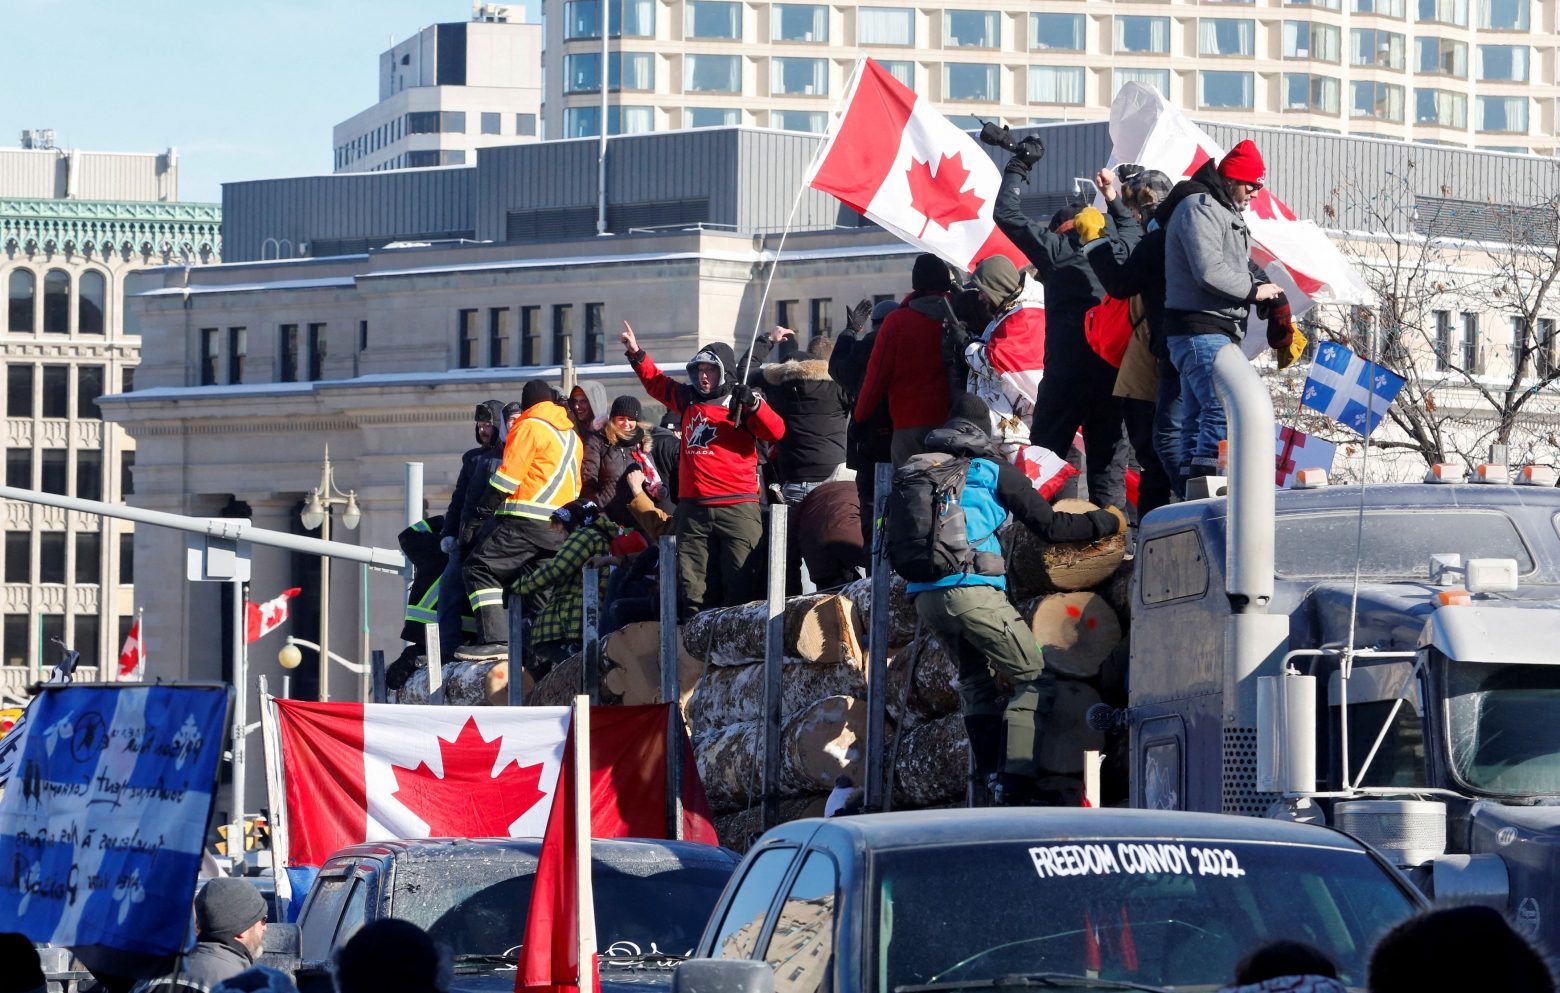 Καναδάς: Κλειστή παραμένει η γέφυρα Αμπάσαντορ - Η αστυνομία απομακρύνει διαδηλωτές και προχωράει σε συλλήψεις